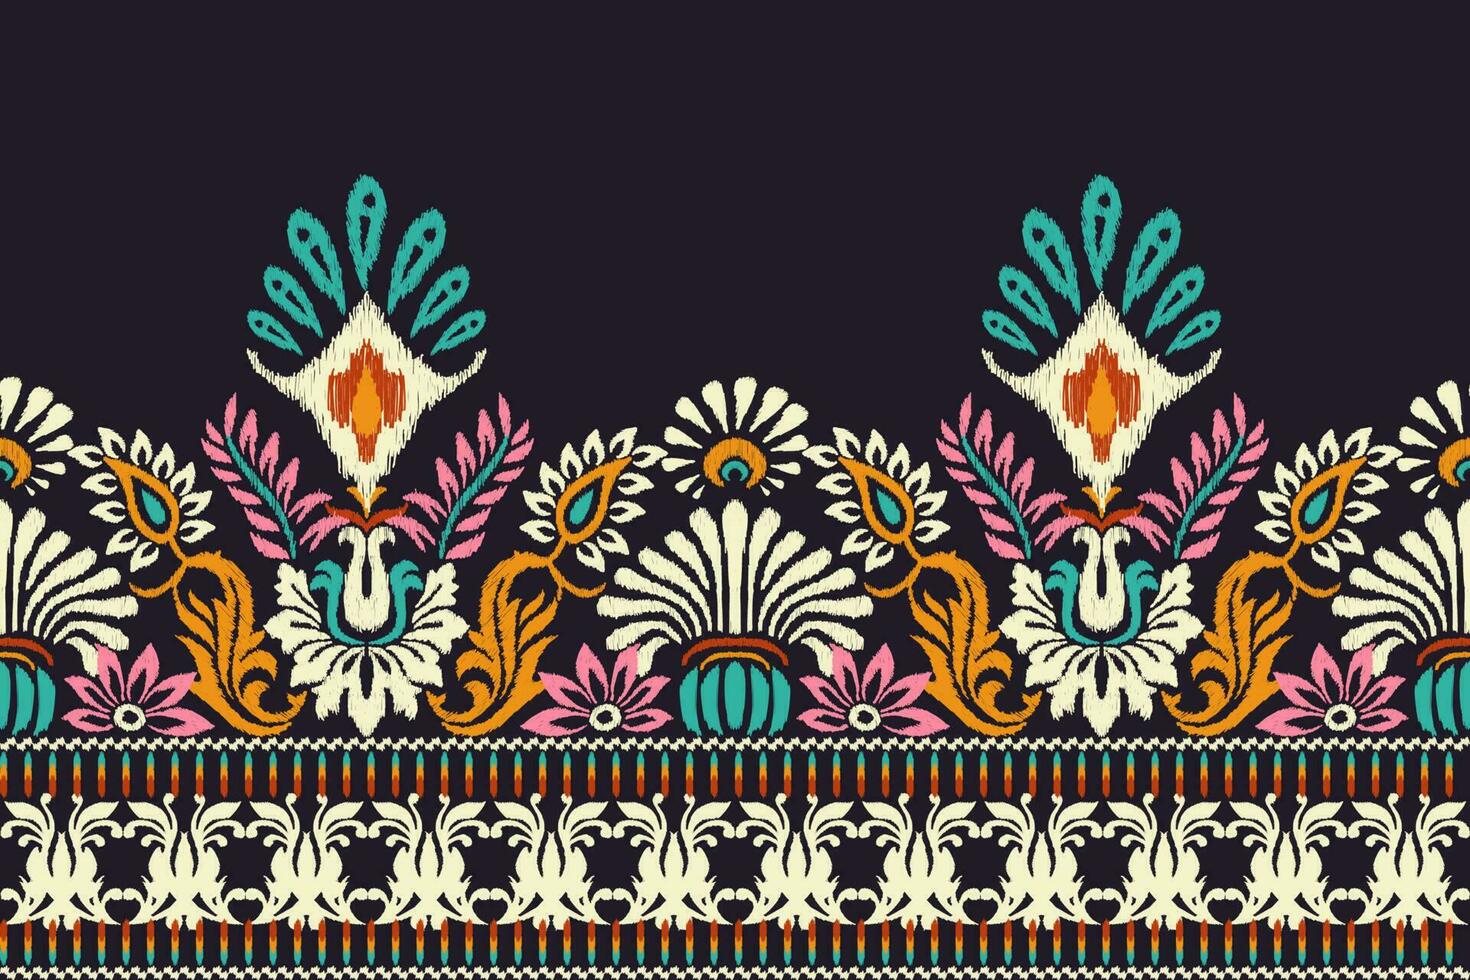 ikat floral paisley bordado em Sombrio roxa plano de fundo.ikat étnico oriental padronizar tradicional.asteca estilo abstrato vetor ilustração.design para textura,tecido,vestuário,embrulho,decoração,canga